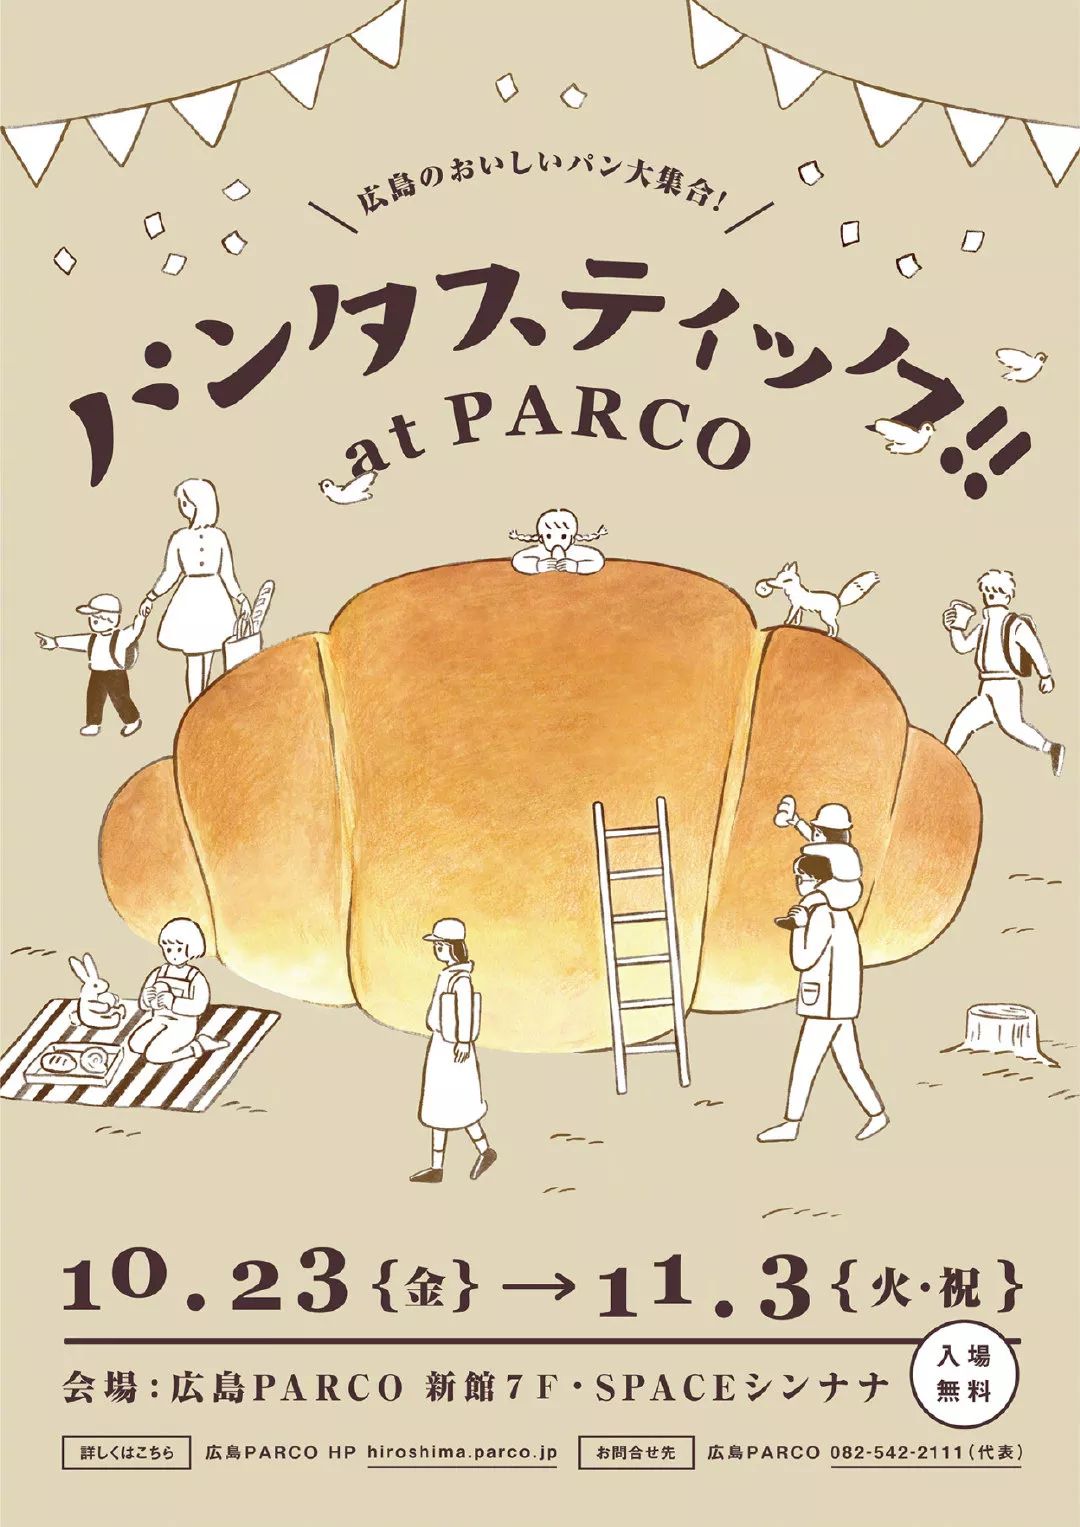 日本漫画元素的面包店海报欣赏